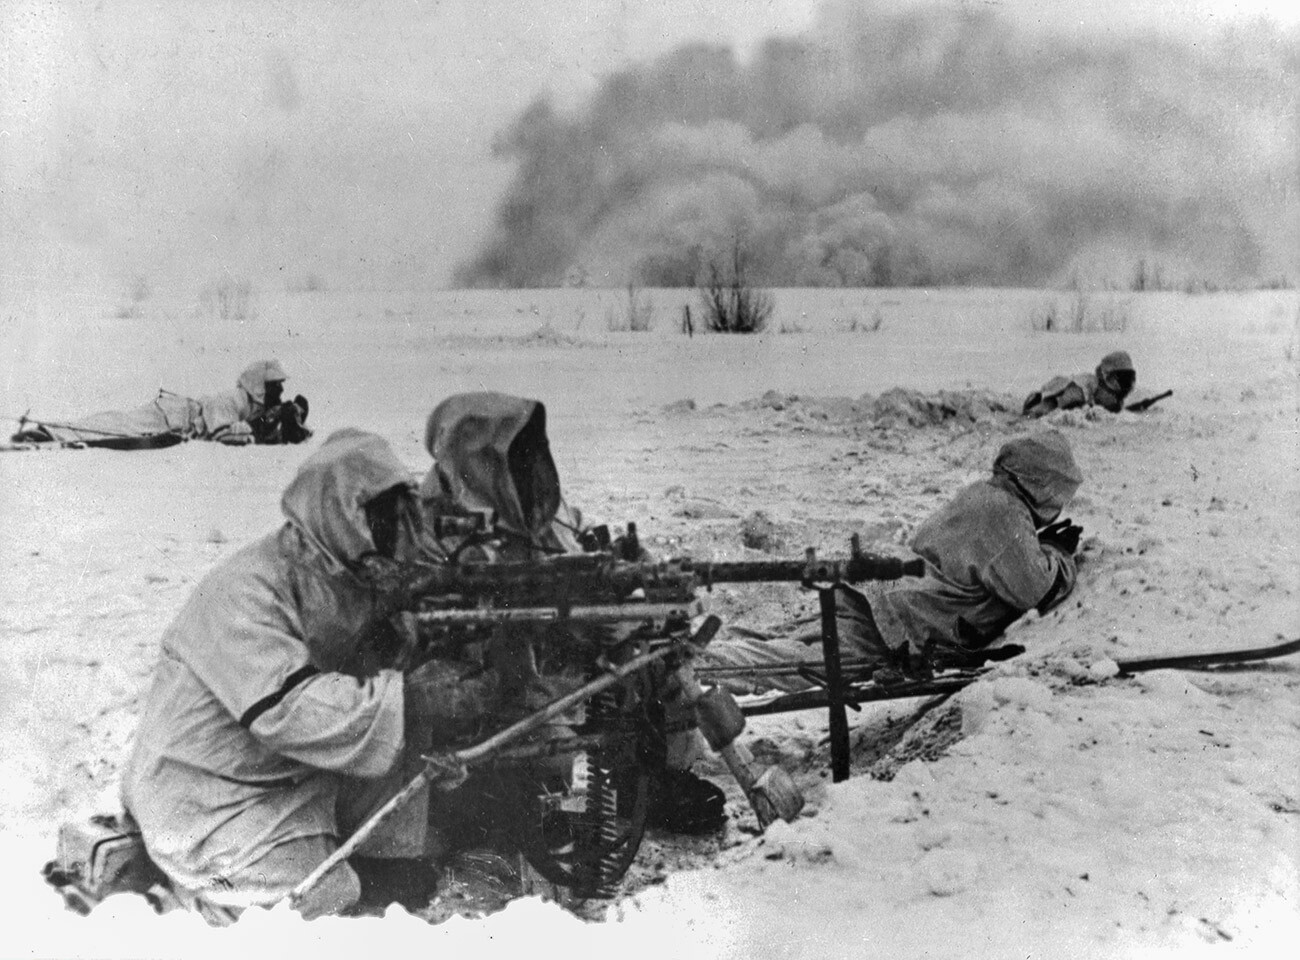 Soldati tedeschi combattono a Stalingrado durante la Seconda guerra mondiale, dicembre 1942